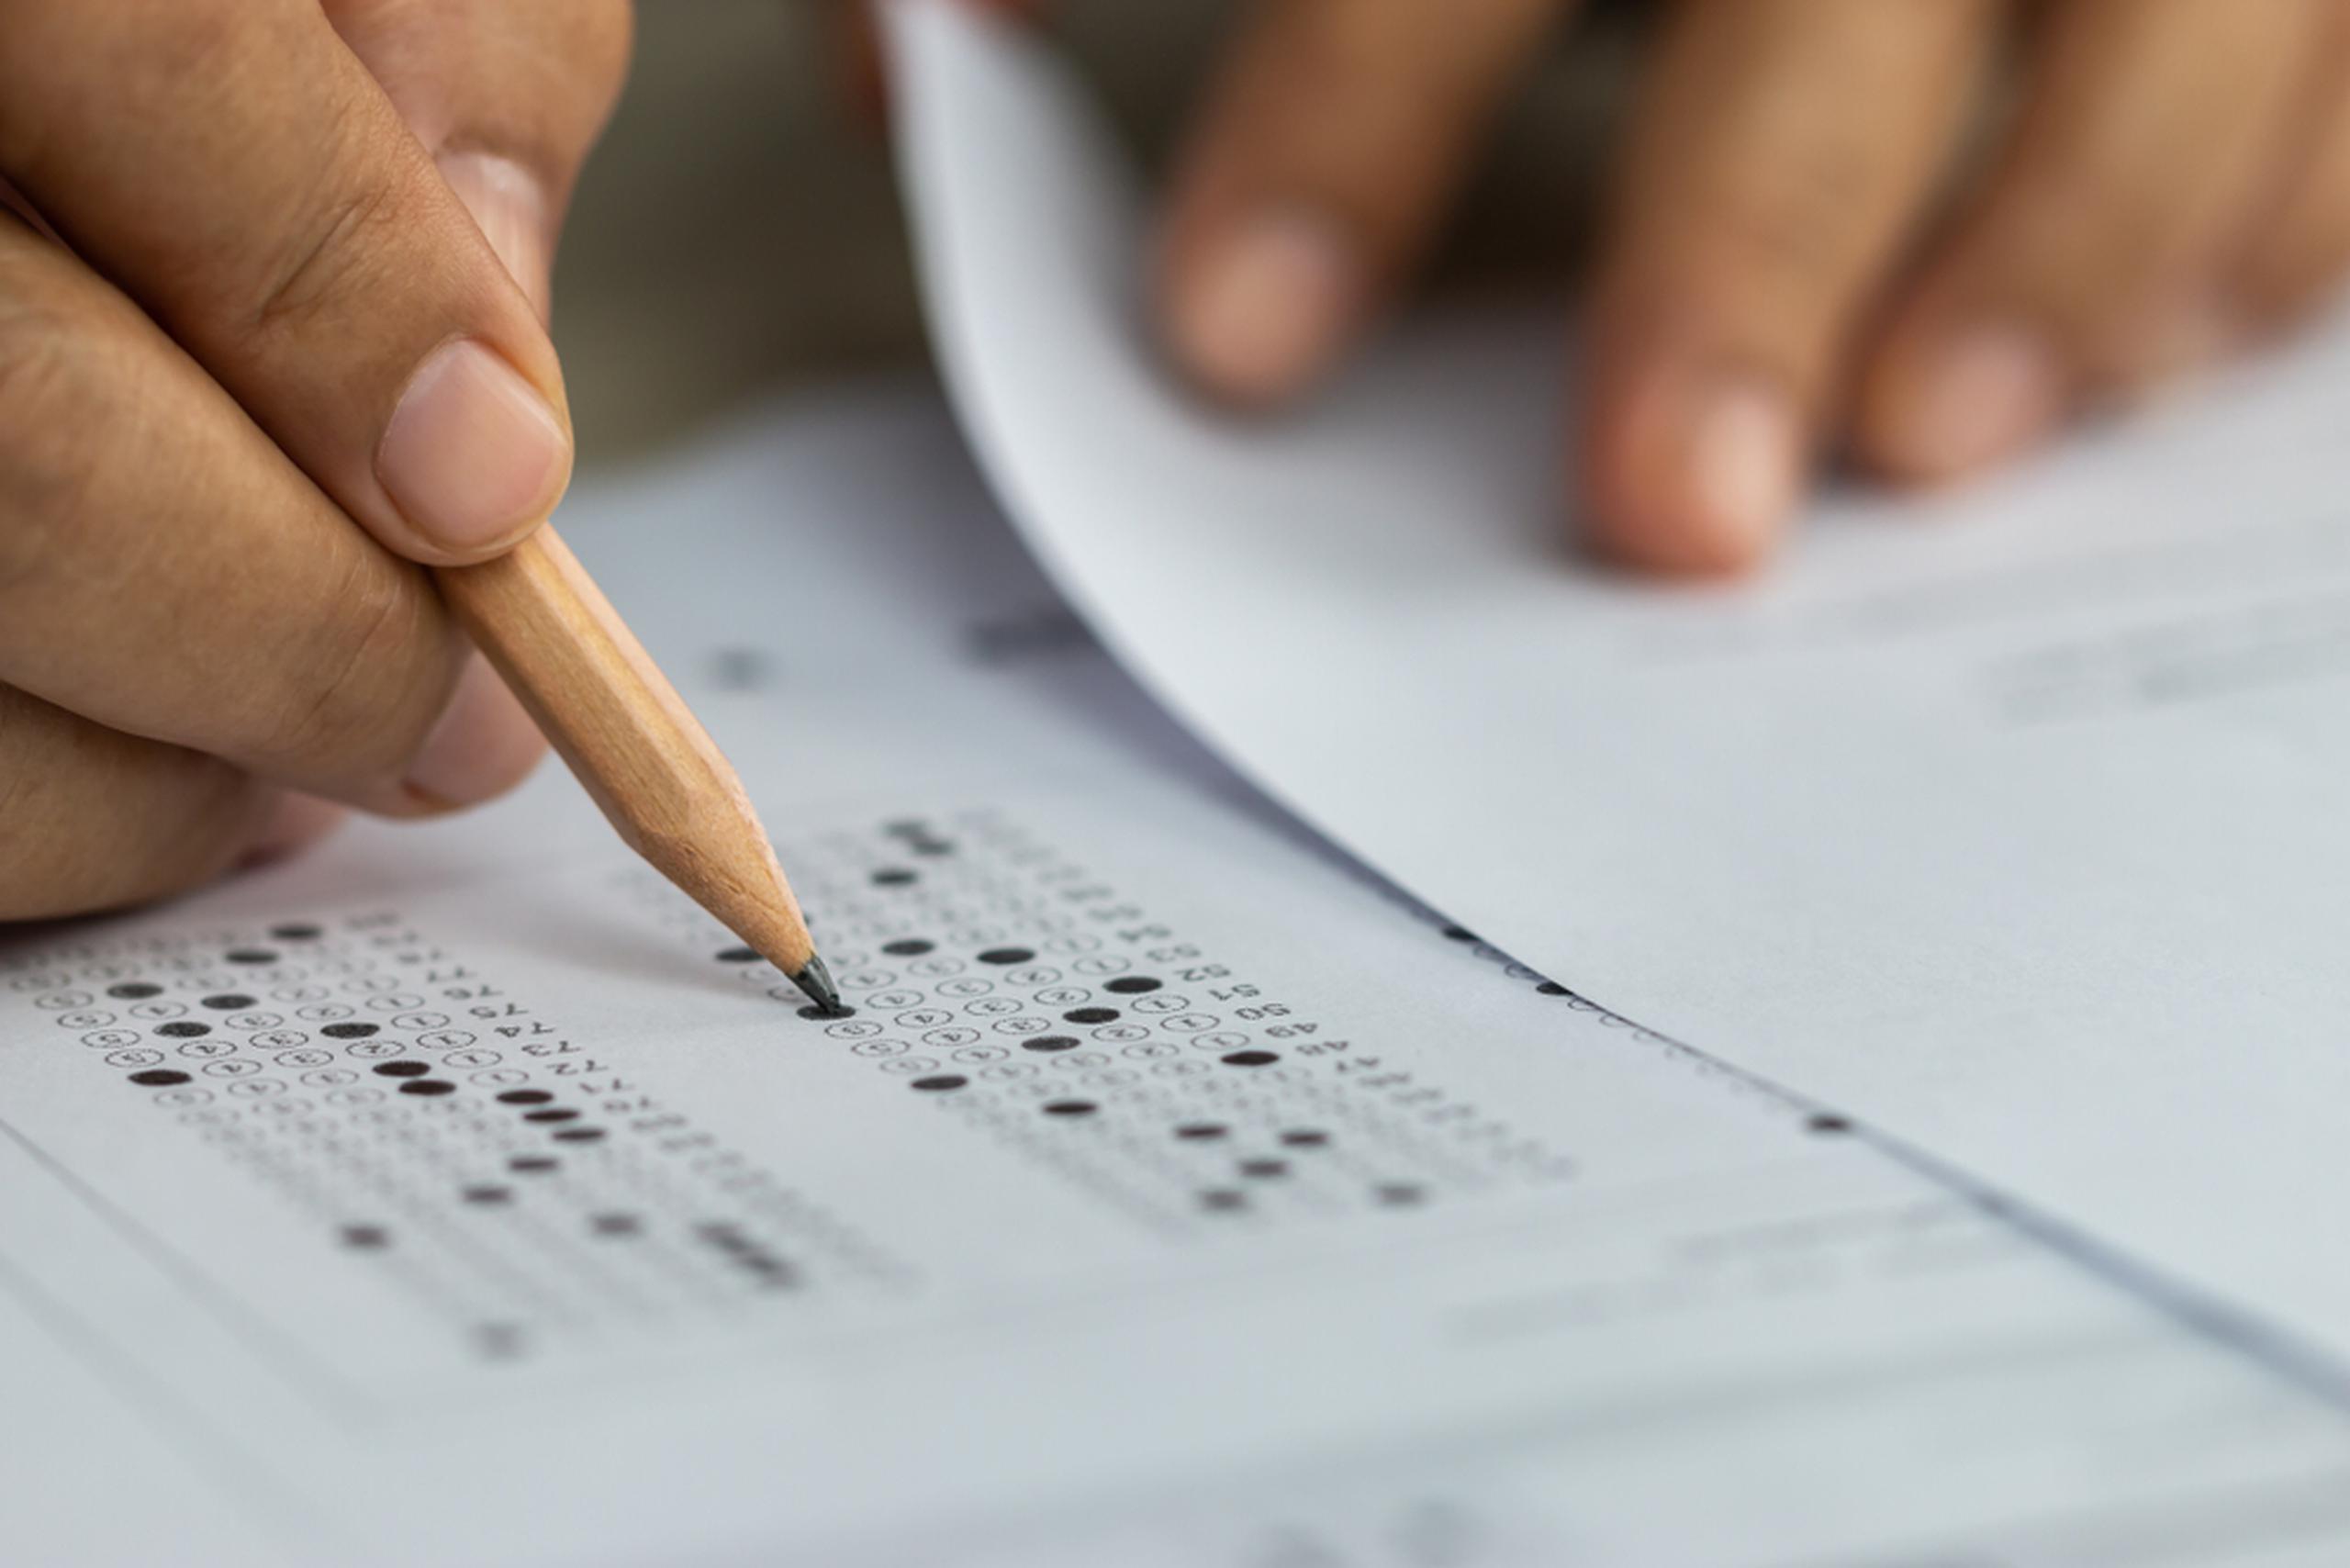 Repetir el SAT o la PAA no tiene repercusiones negativas en las puntuaciones ni en el proceso de admisión.